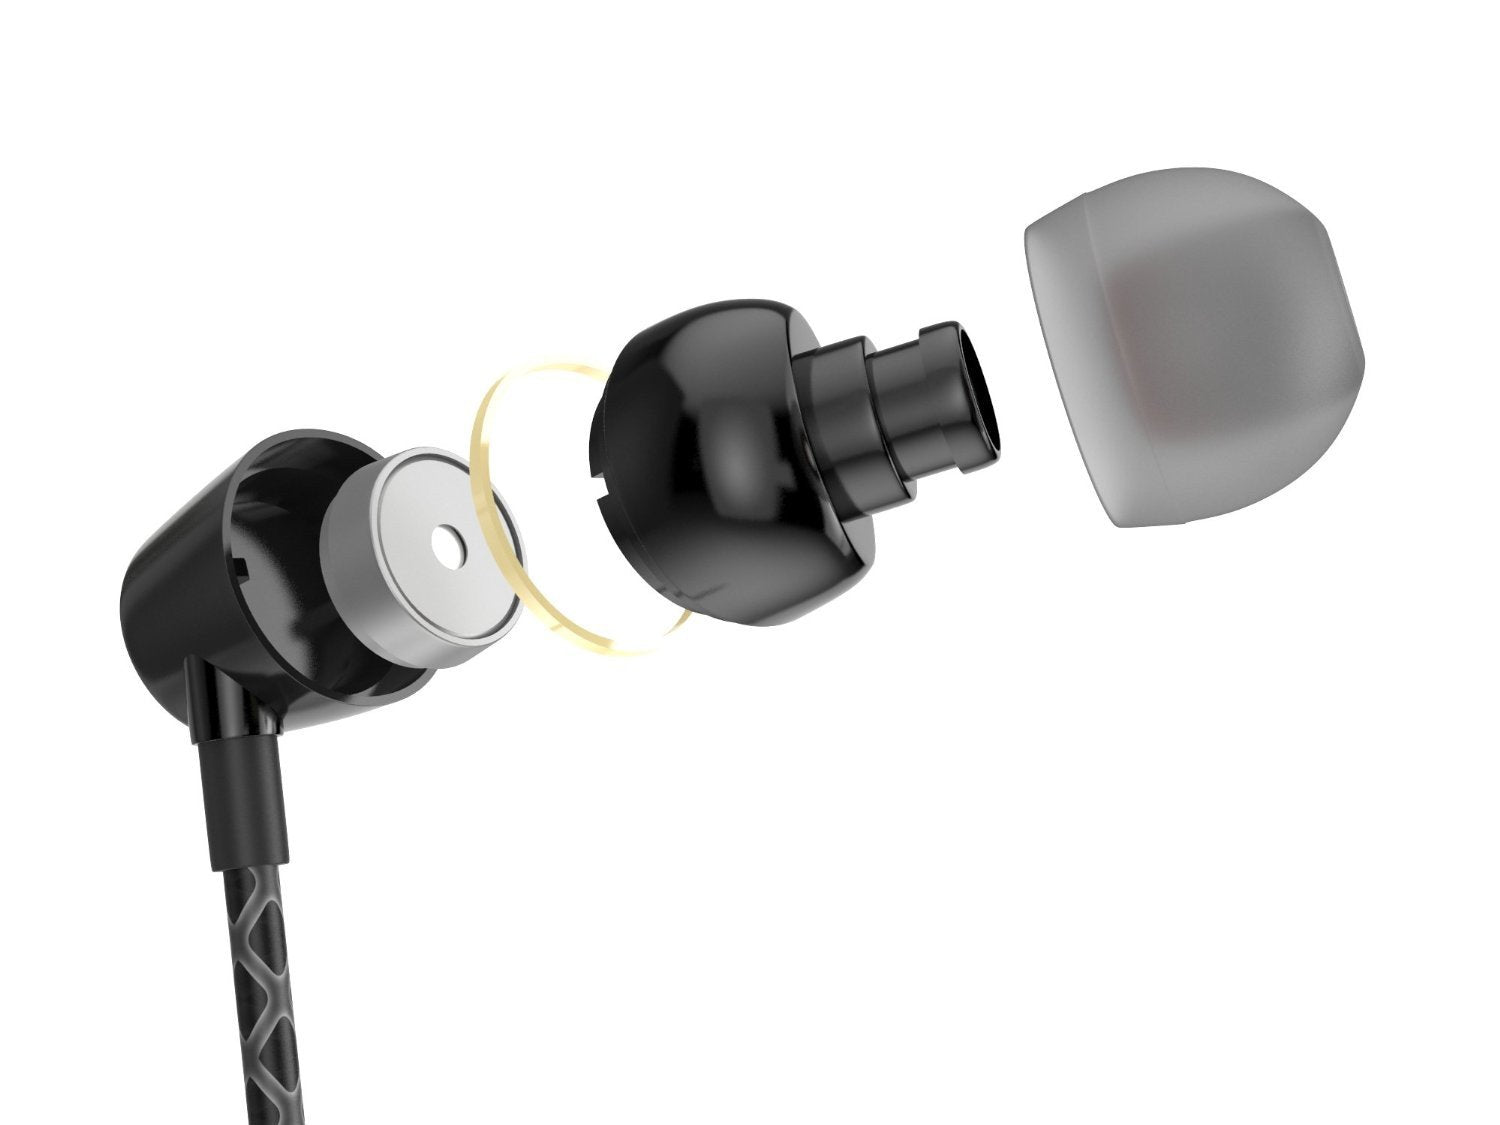 Wired 3.5MM Headphones Earphones, Ghostek Turbine Black Series Wired Earbuds | Built-In Microphone